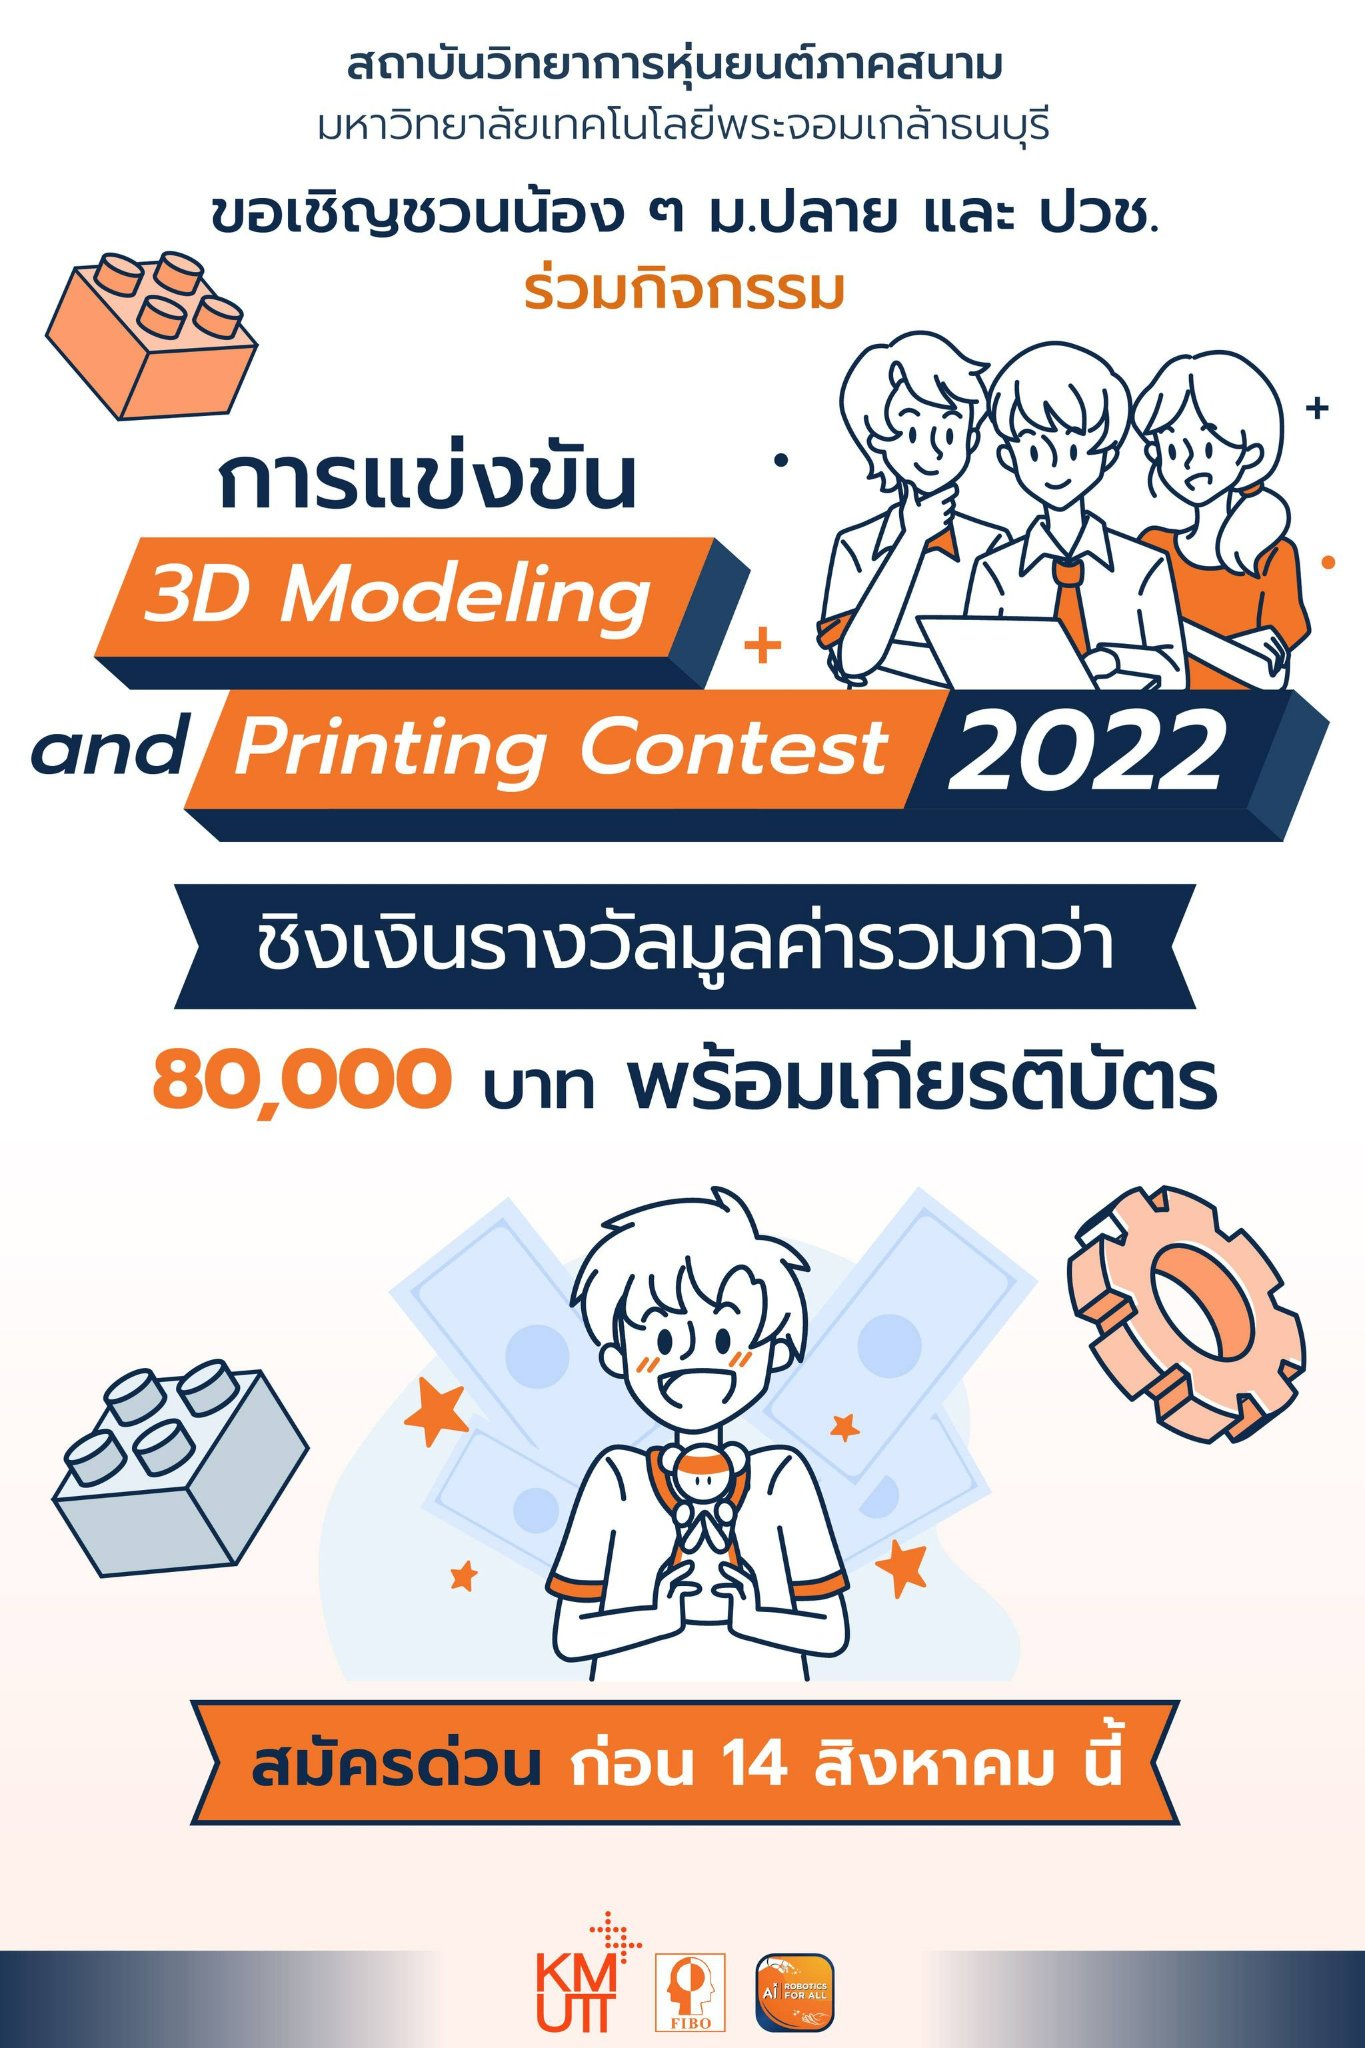 ขอเชิญผู้สนใจเข้าร่วมการแข่งขันการออกแบบชิ้นงานสามมิติ สำหรับการพิมพ์ชิ้นงานสามมิติ (3D Modeling Printing 2022)